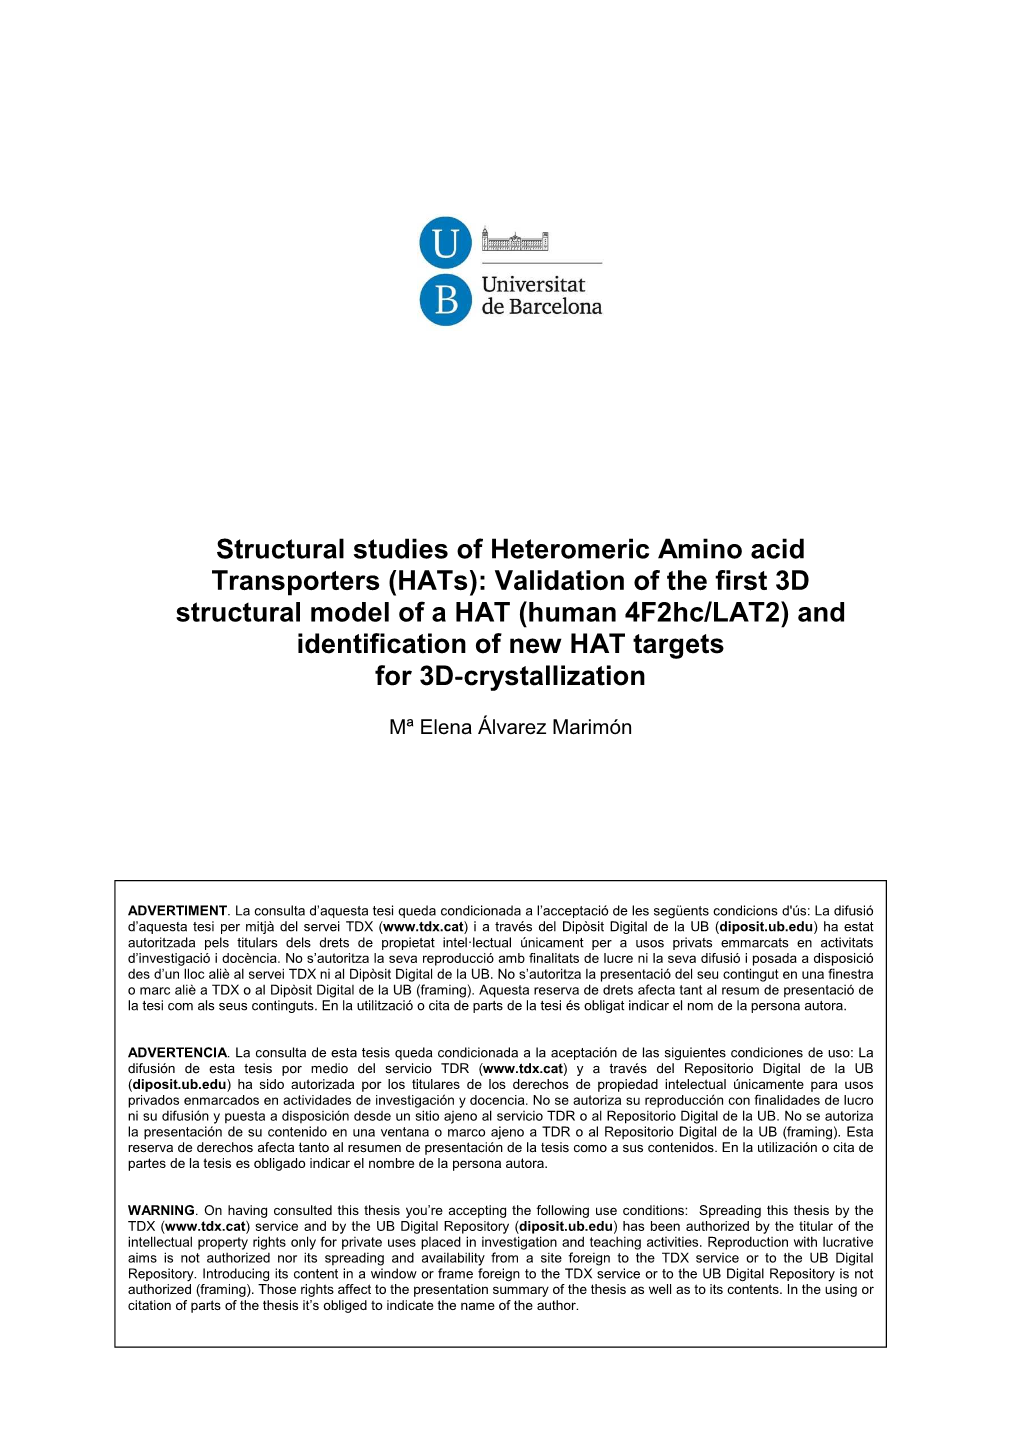 Structural Studies of Heteromeric Amino Acid Transporters (Hats